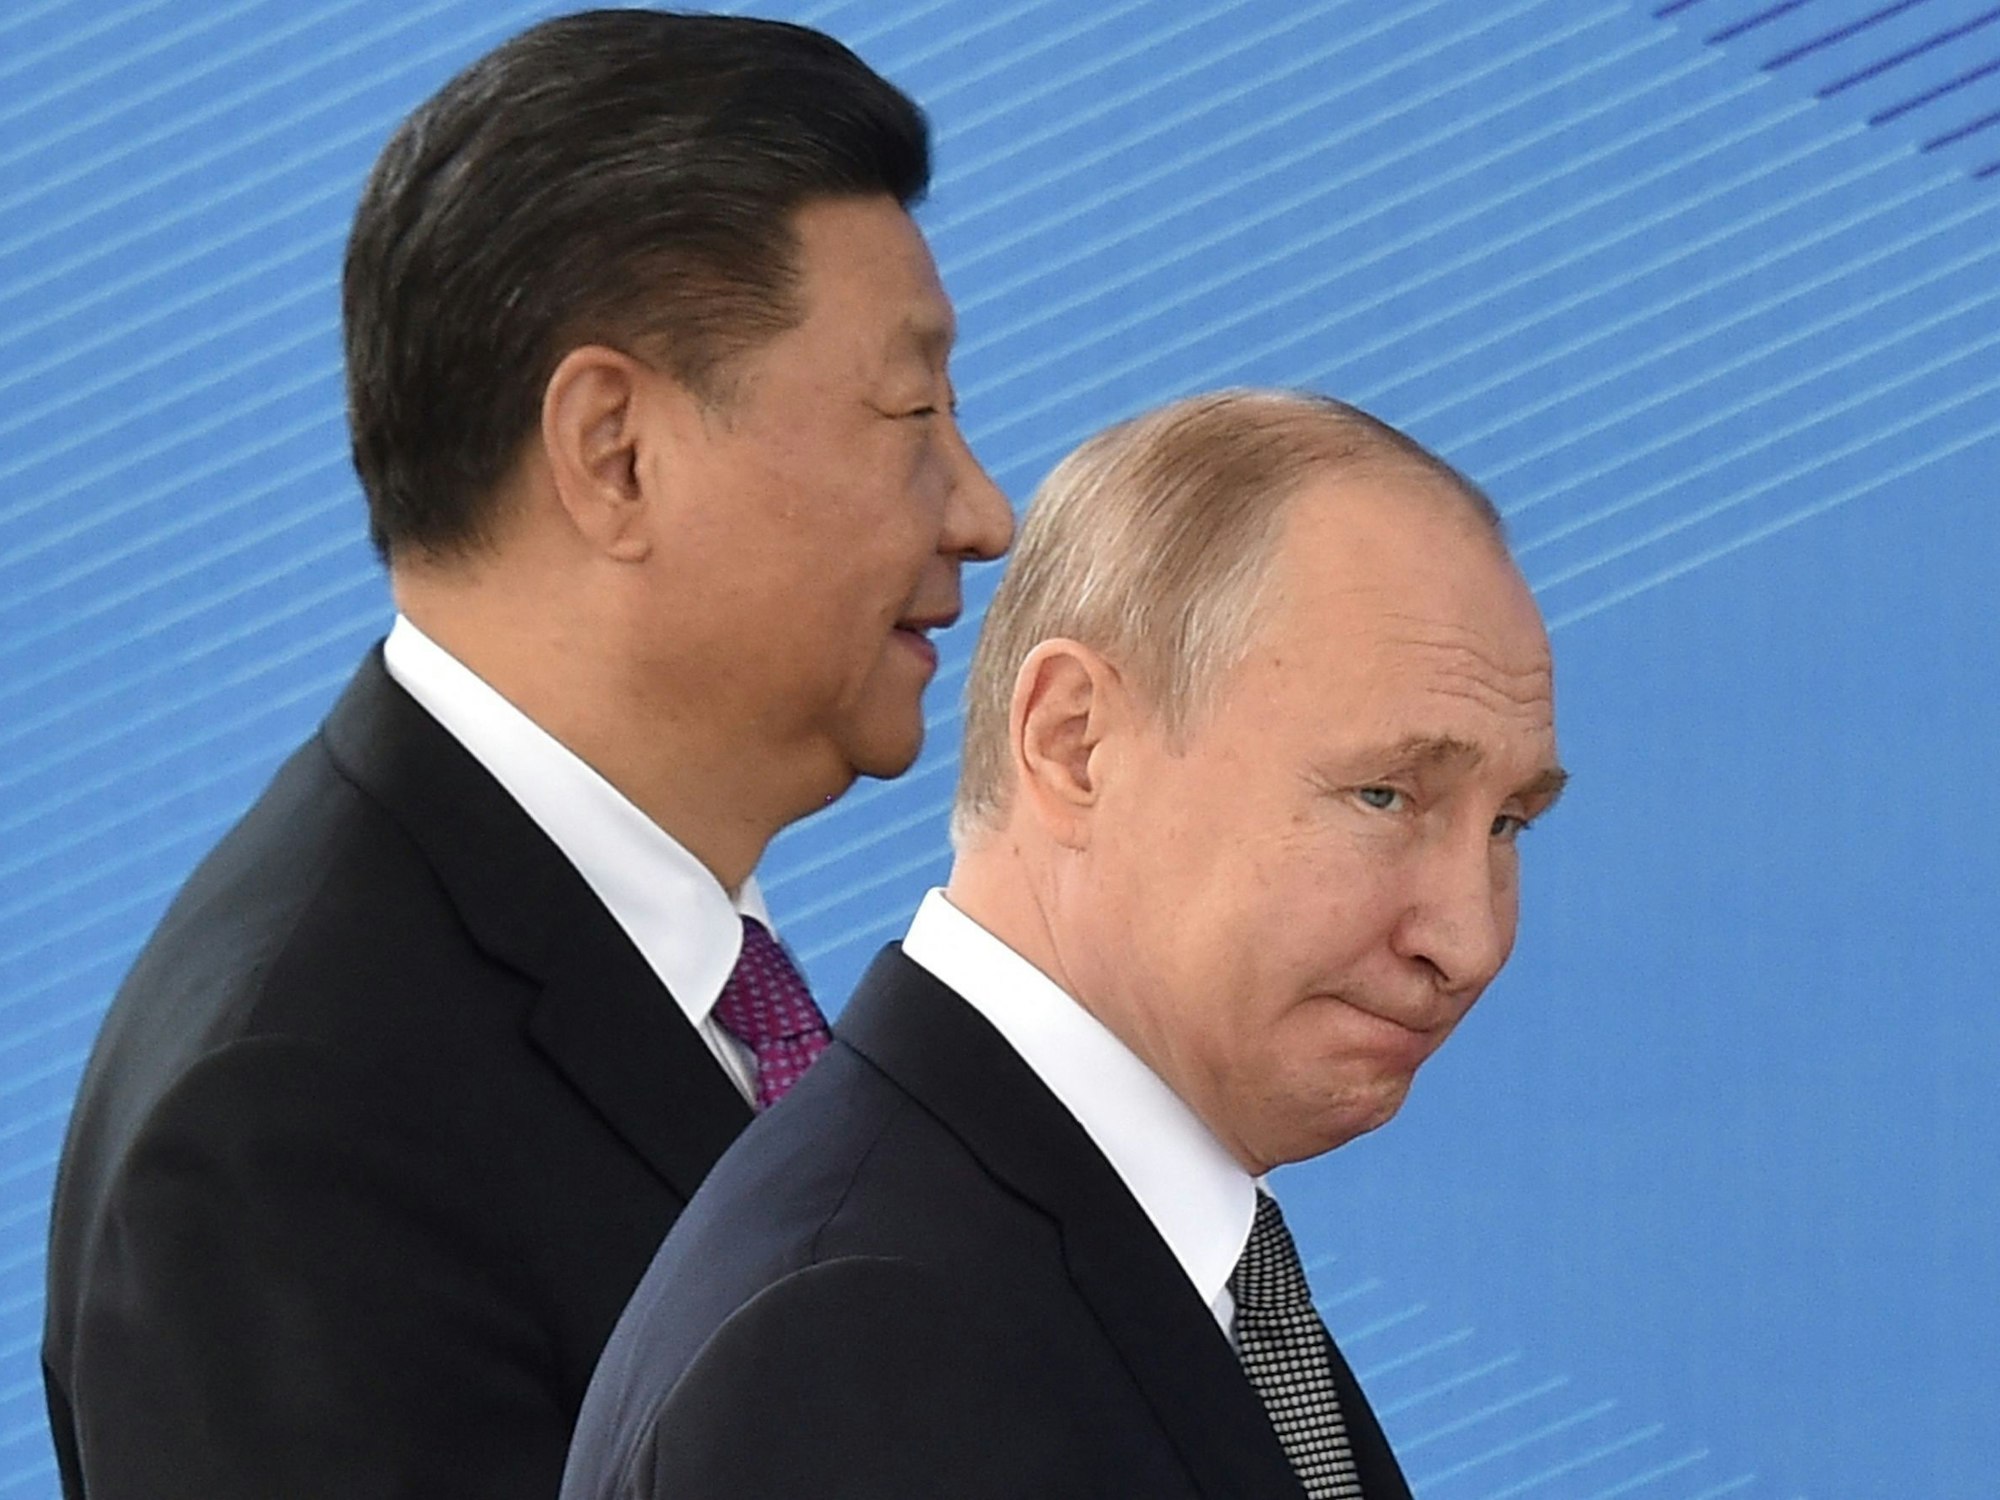 Russlands Präsident Wladimir Putin (vorne) und Chinas Präsident Xi Jinping 2019 in Bishkek: Beide Länder haben nach Putins Angriffskrieg gegen die Ukraine eine „grenzenlose Partnerschaft“ ausgerufen. Das könnte sich nun ändern.